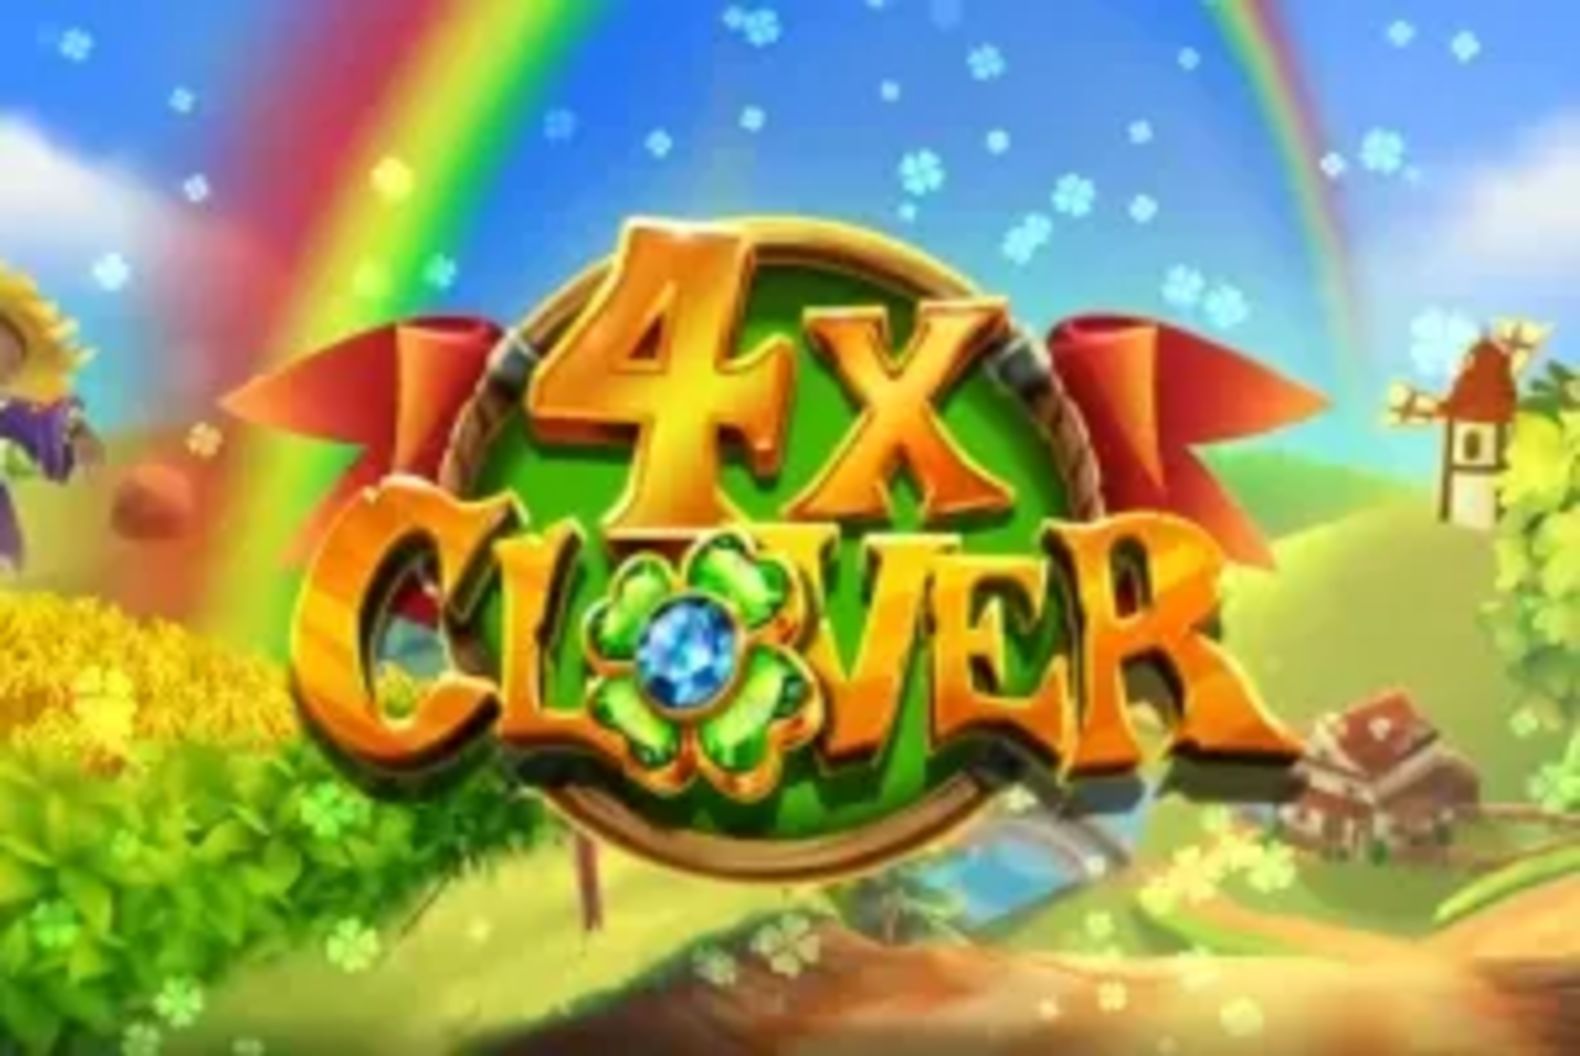 4X Clover